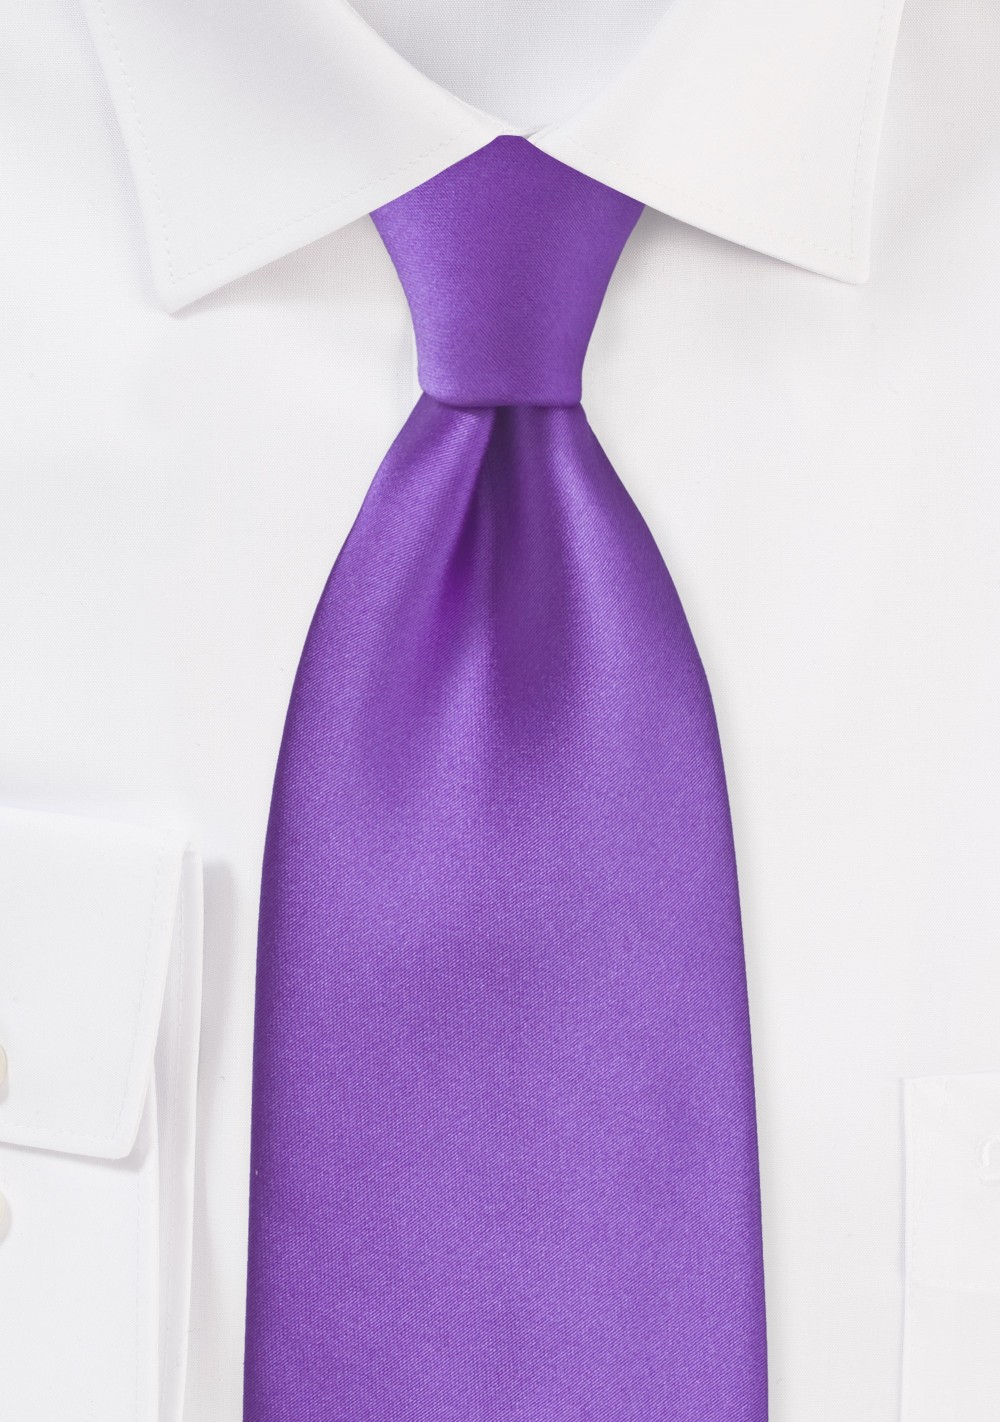 Solid Bright Purple Necktie